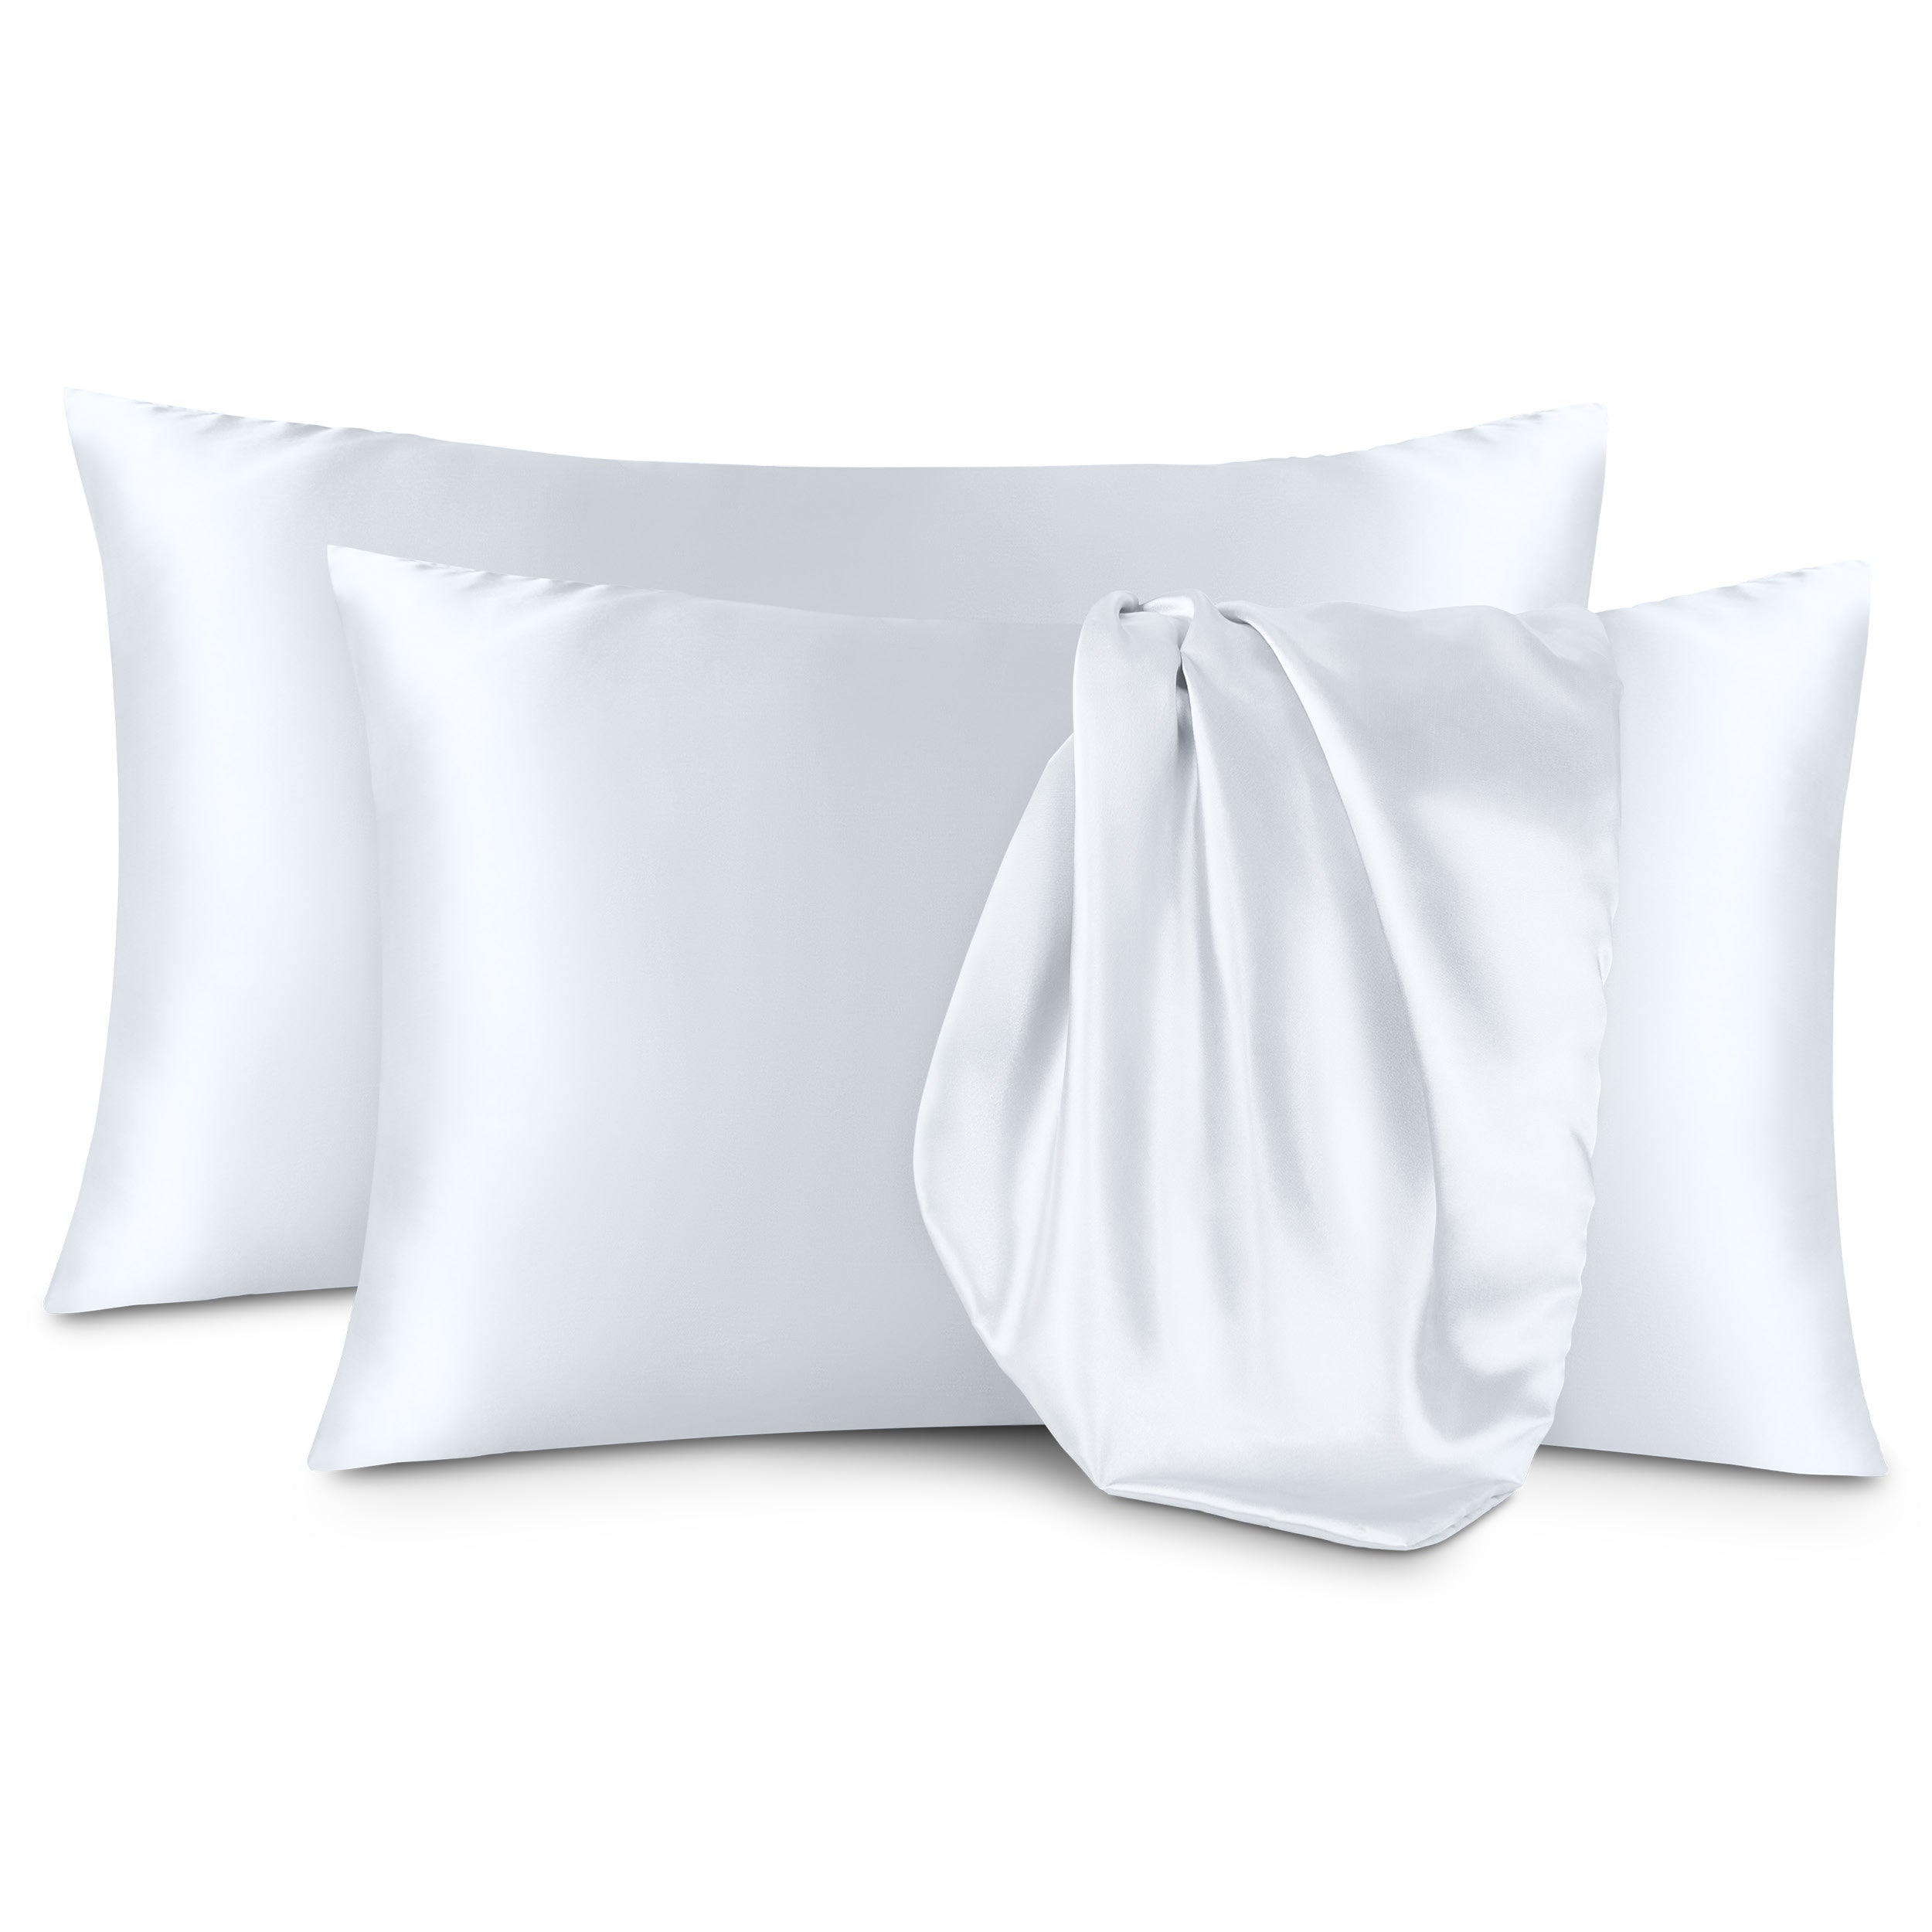 Two satin pillowcases on a white background